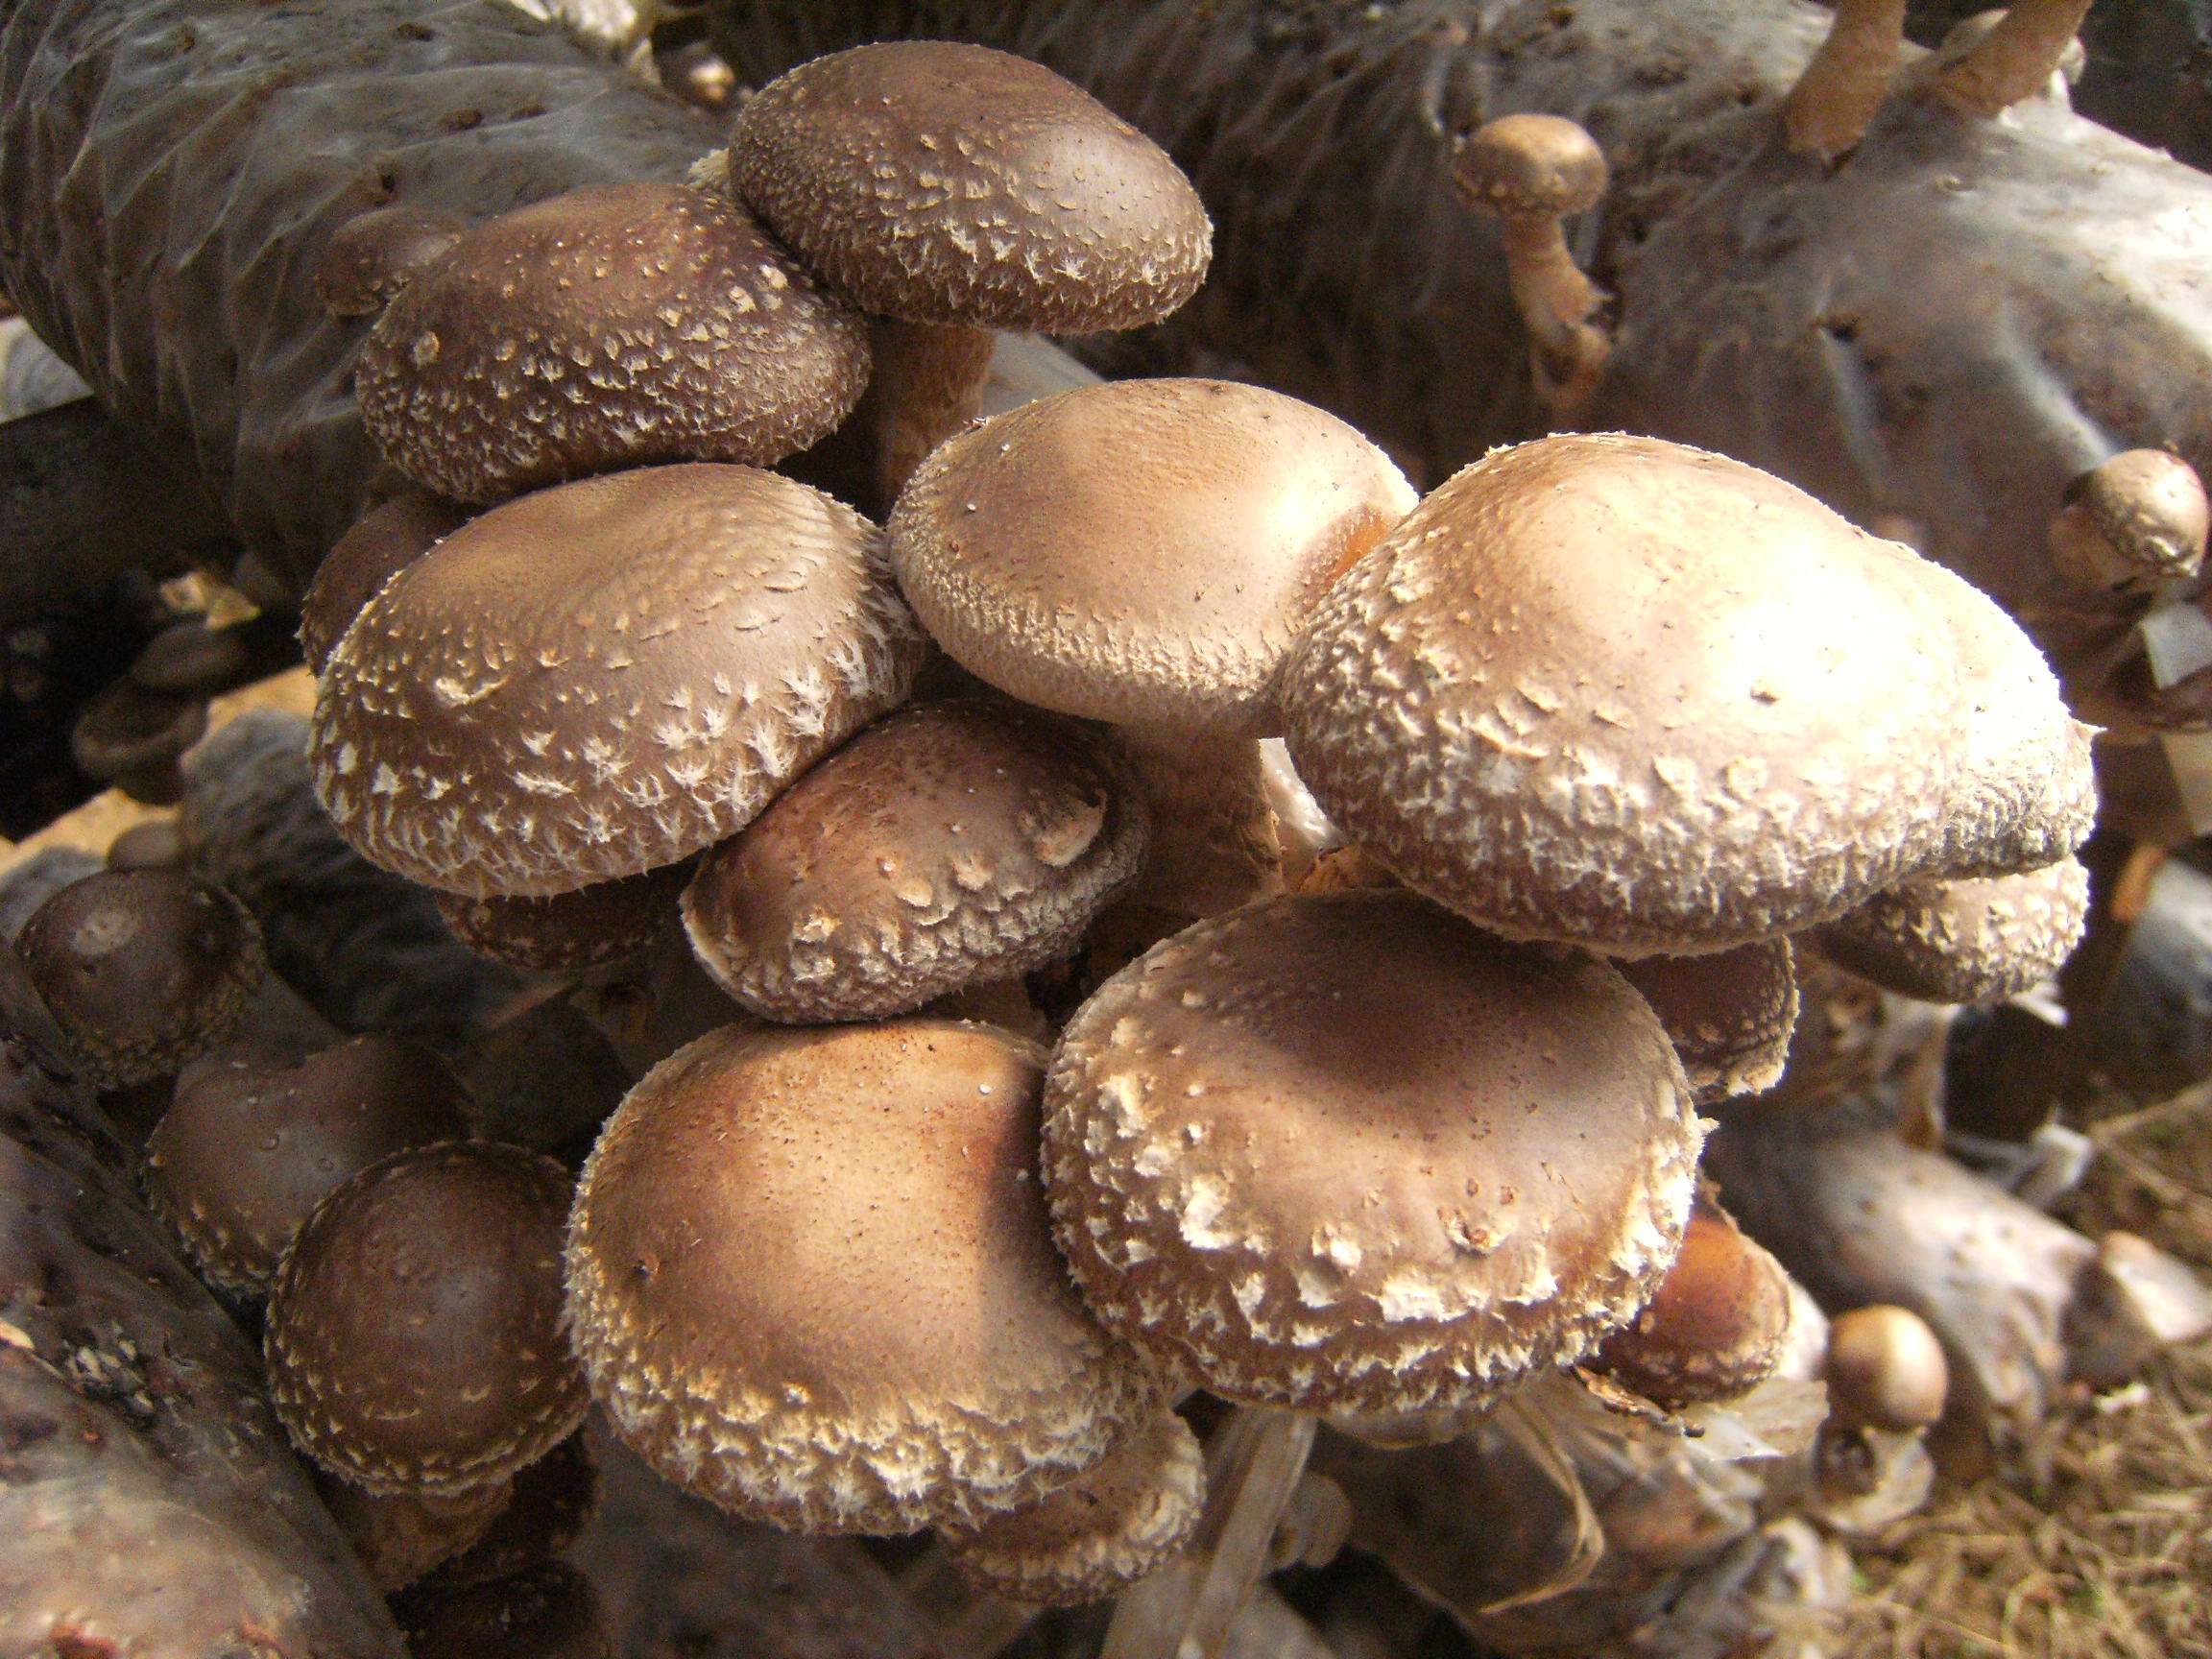 蘑菇营养价值高,但是怎样种出好蘑菇呢?这几点要注意!